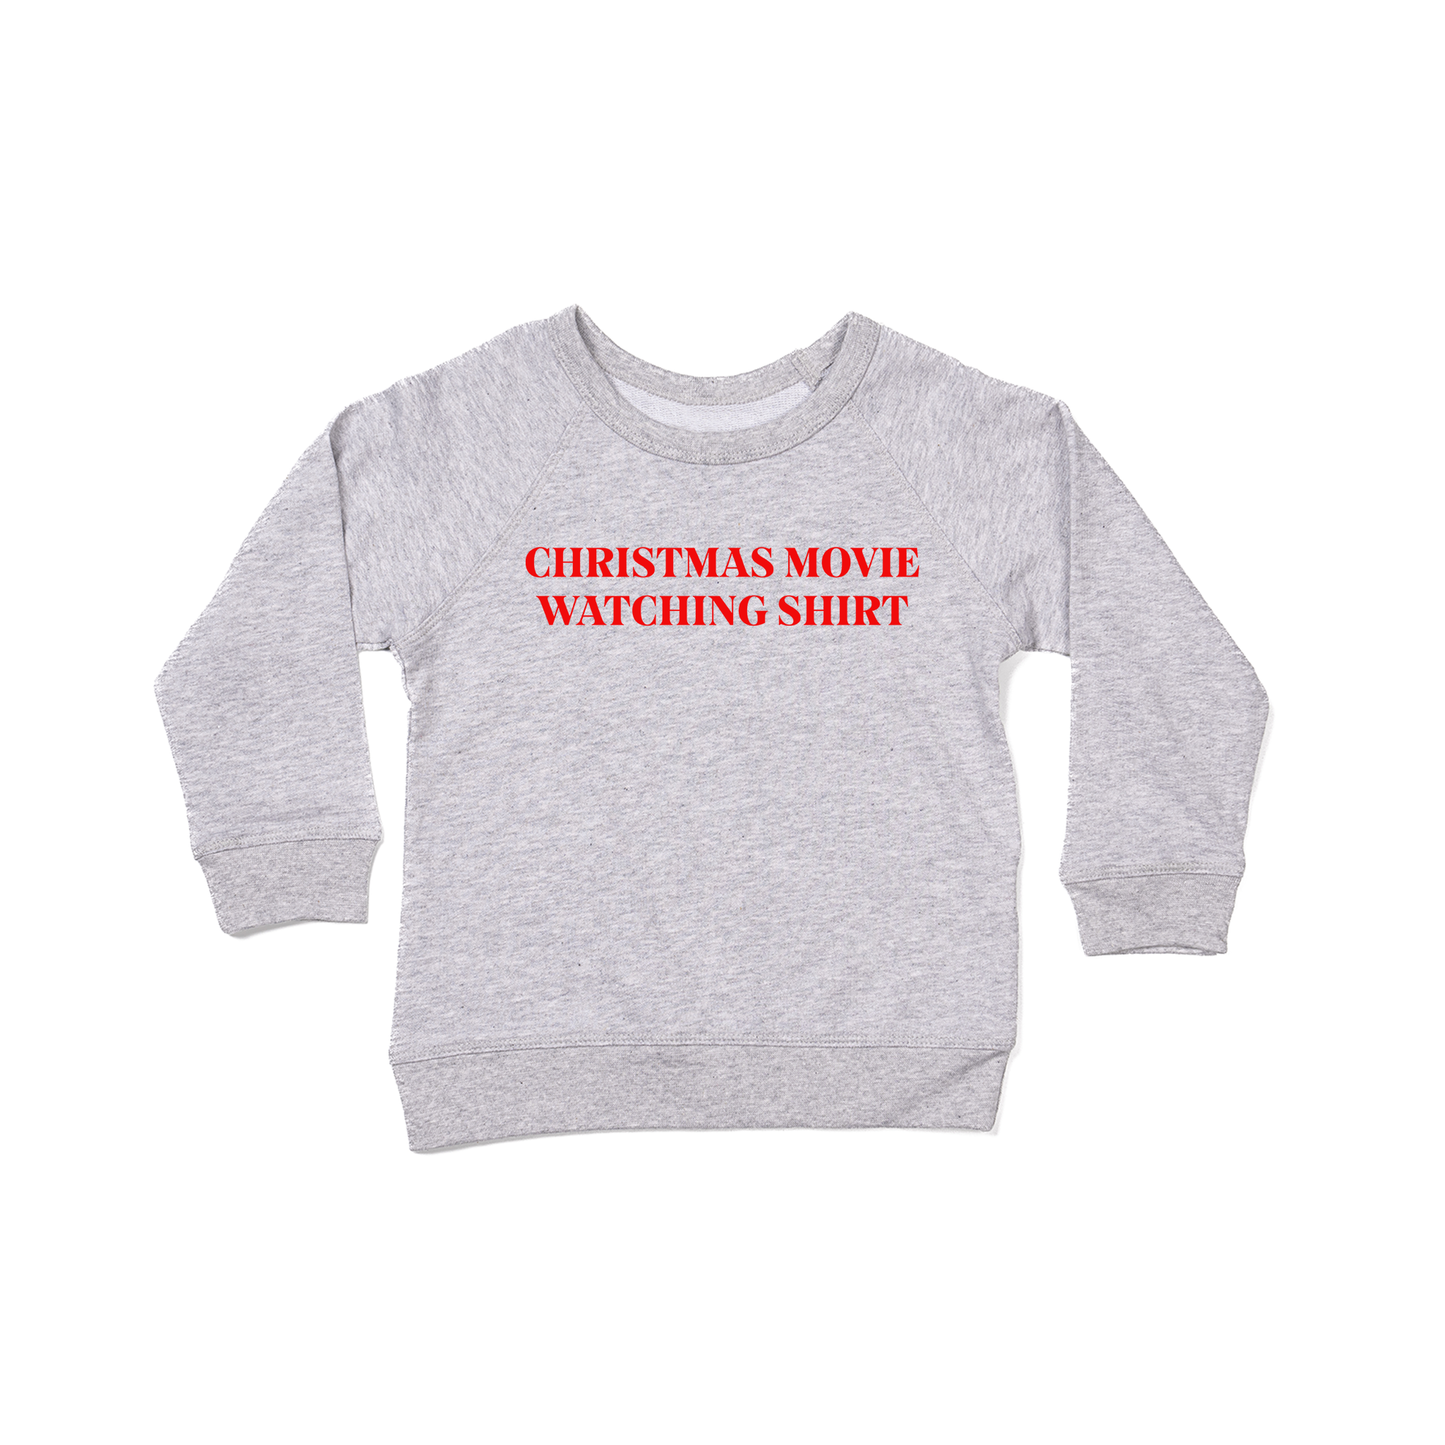 Christmas Movie Watching Shirt (Red) - Kids Sweatshirt (Heather Gray)